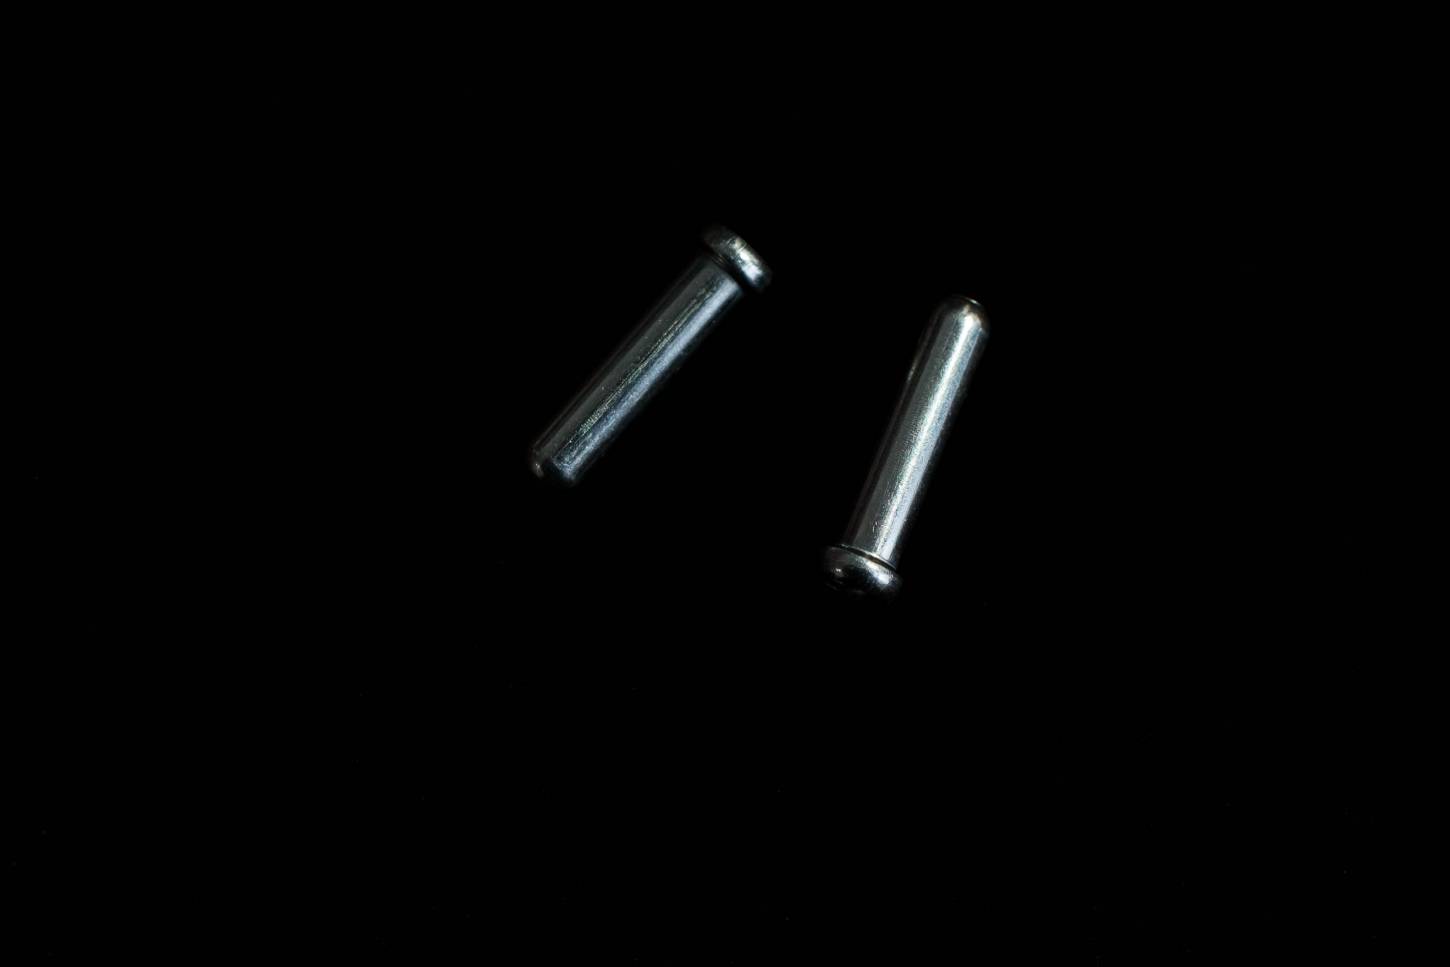 10x tapones Shimano para engarzar los niples para el cable de freno Manguitos de aluminio de 1,6mm